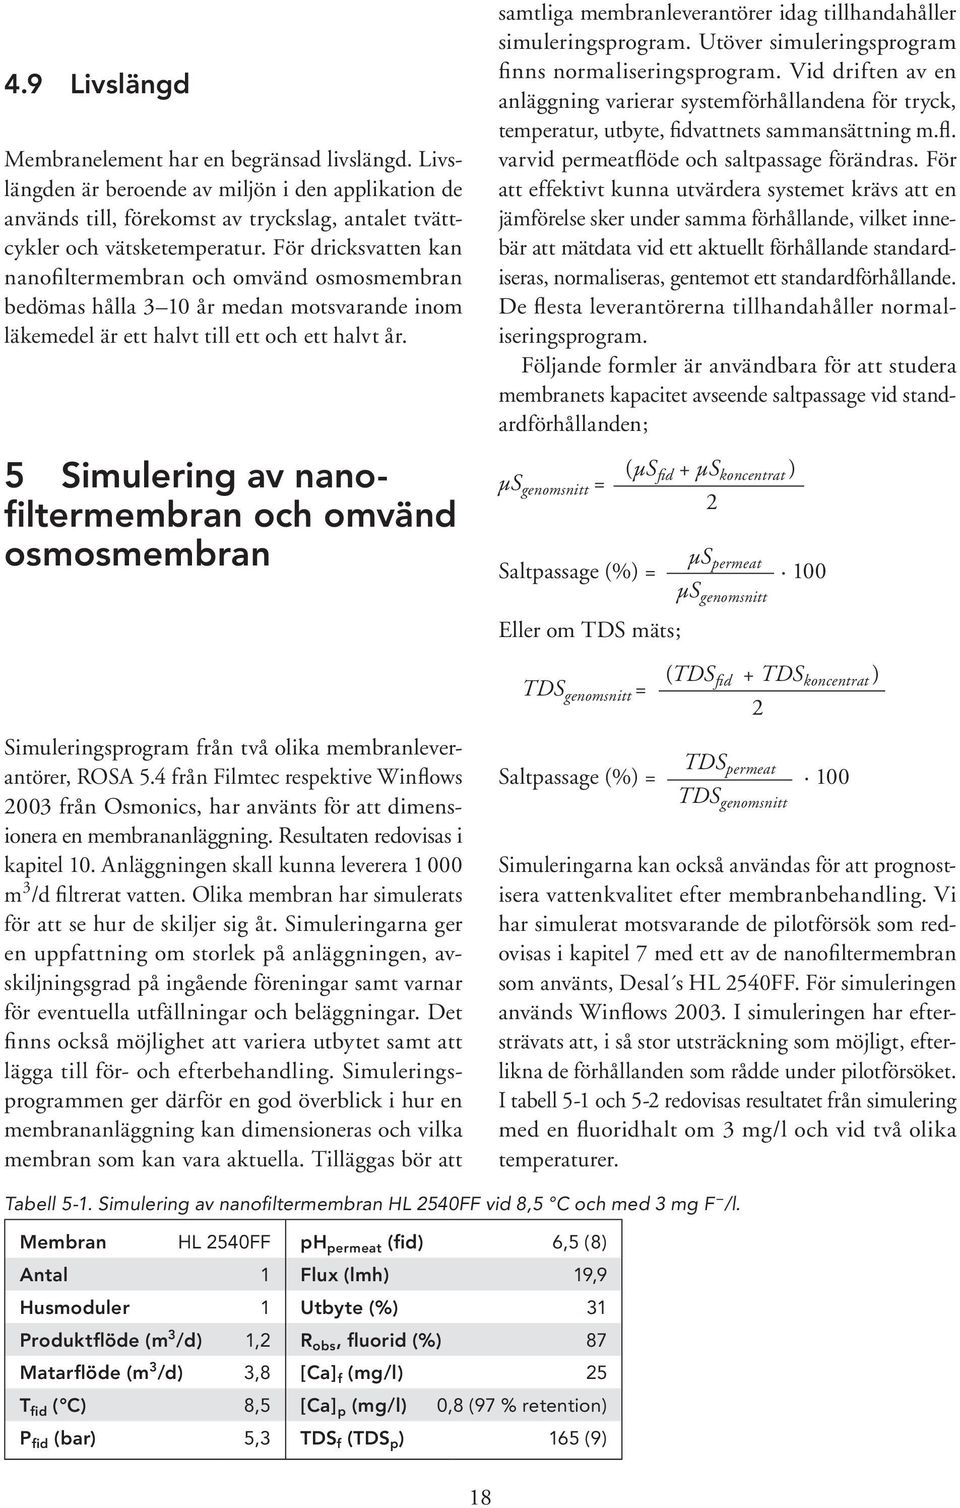 5 Simulering av nanofiltermembran och omvänd osmosmembran samtliga membranleverantörer idag tillhandahåller simuleringsprogram. Utöver simuleringsprogram finns normaliseringsprogram.